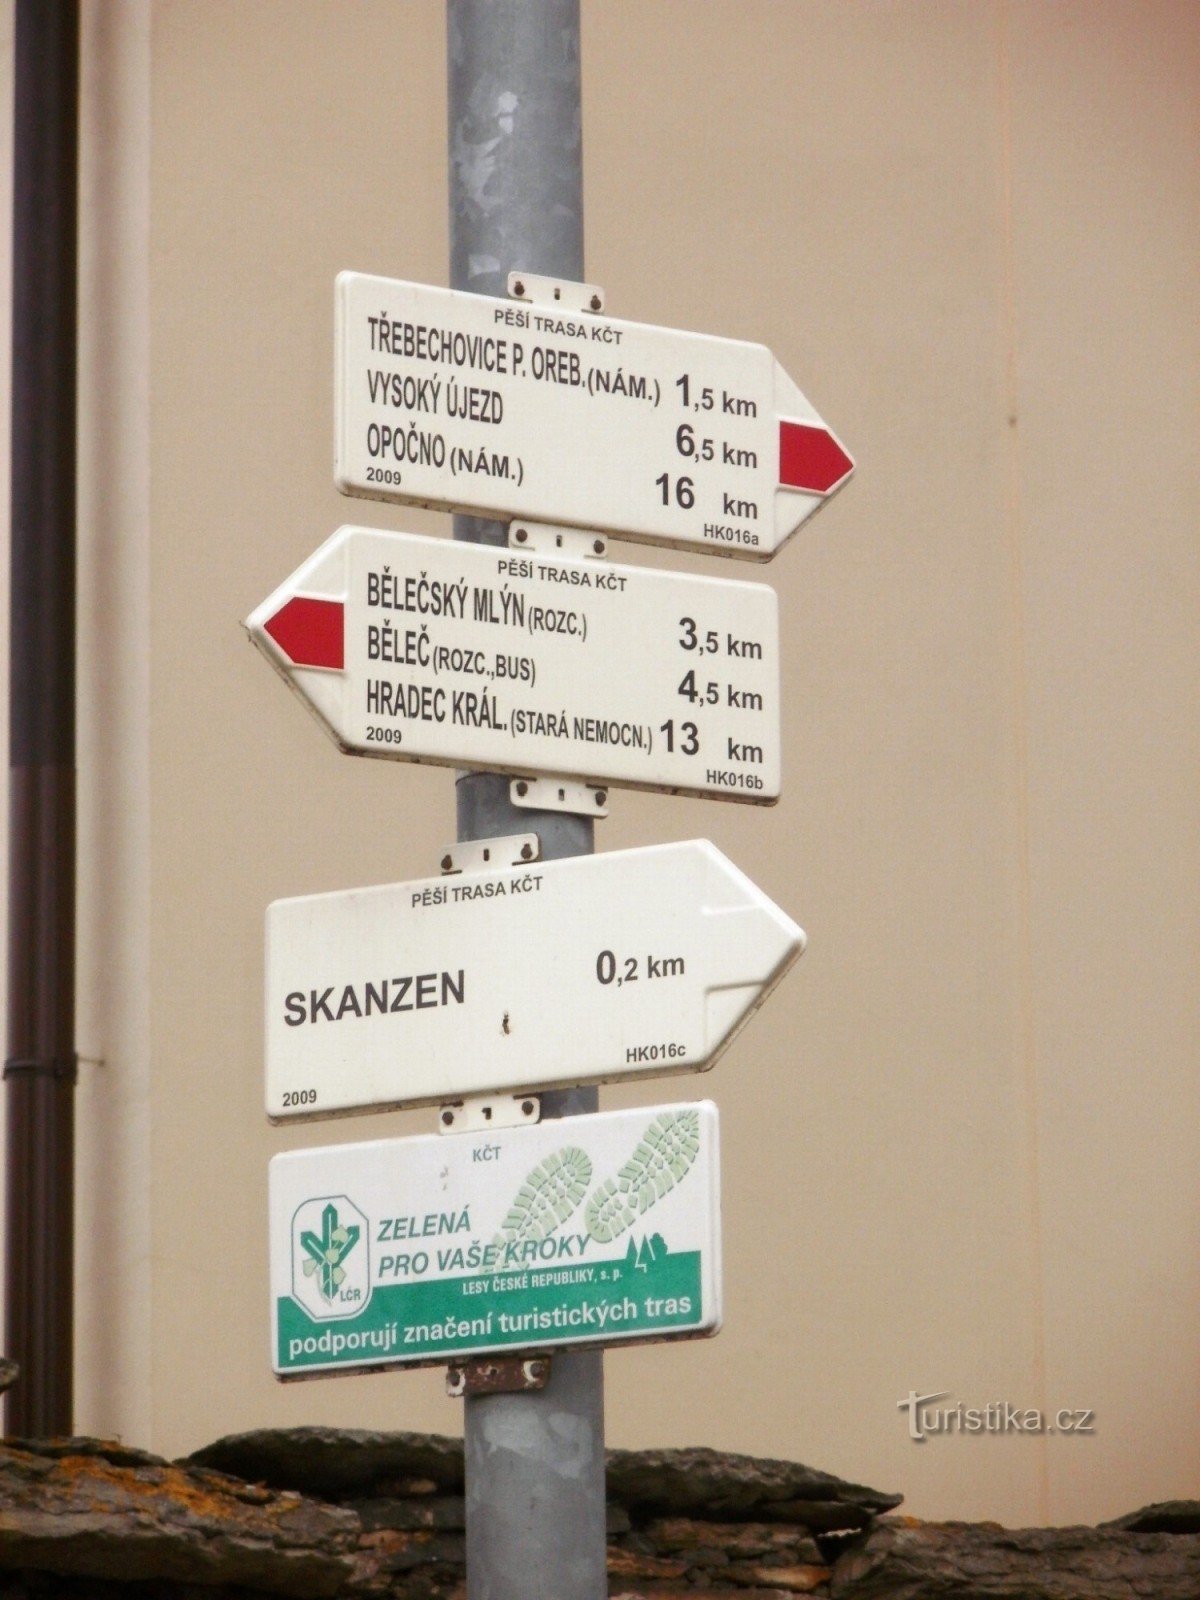 クルニョヴィツェの観光交差点